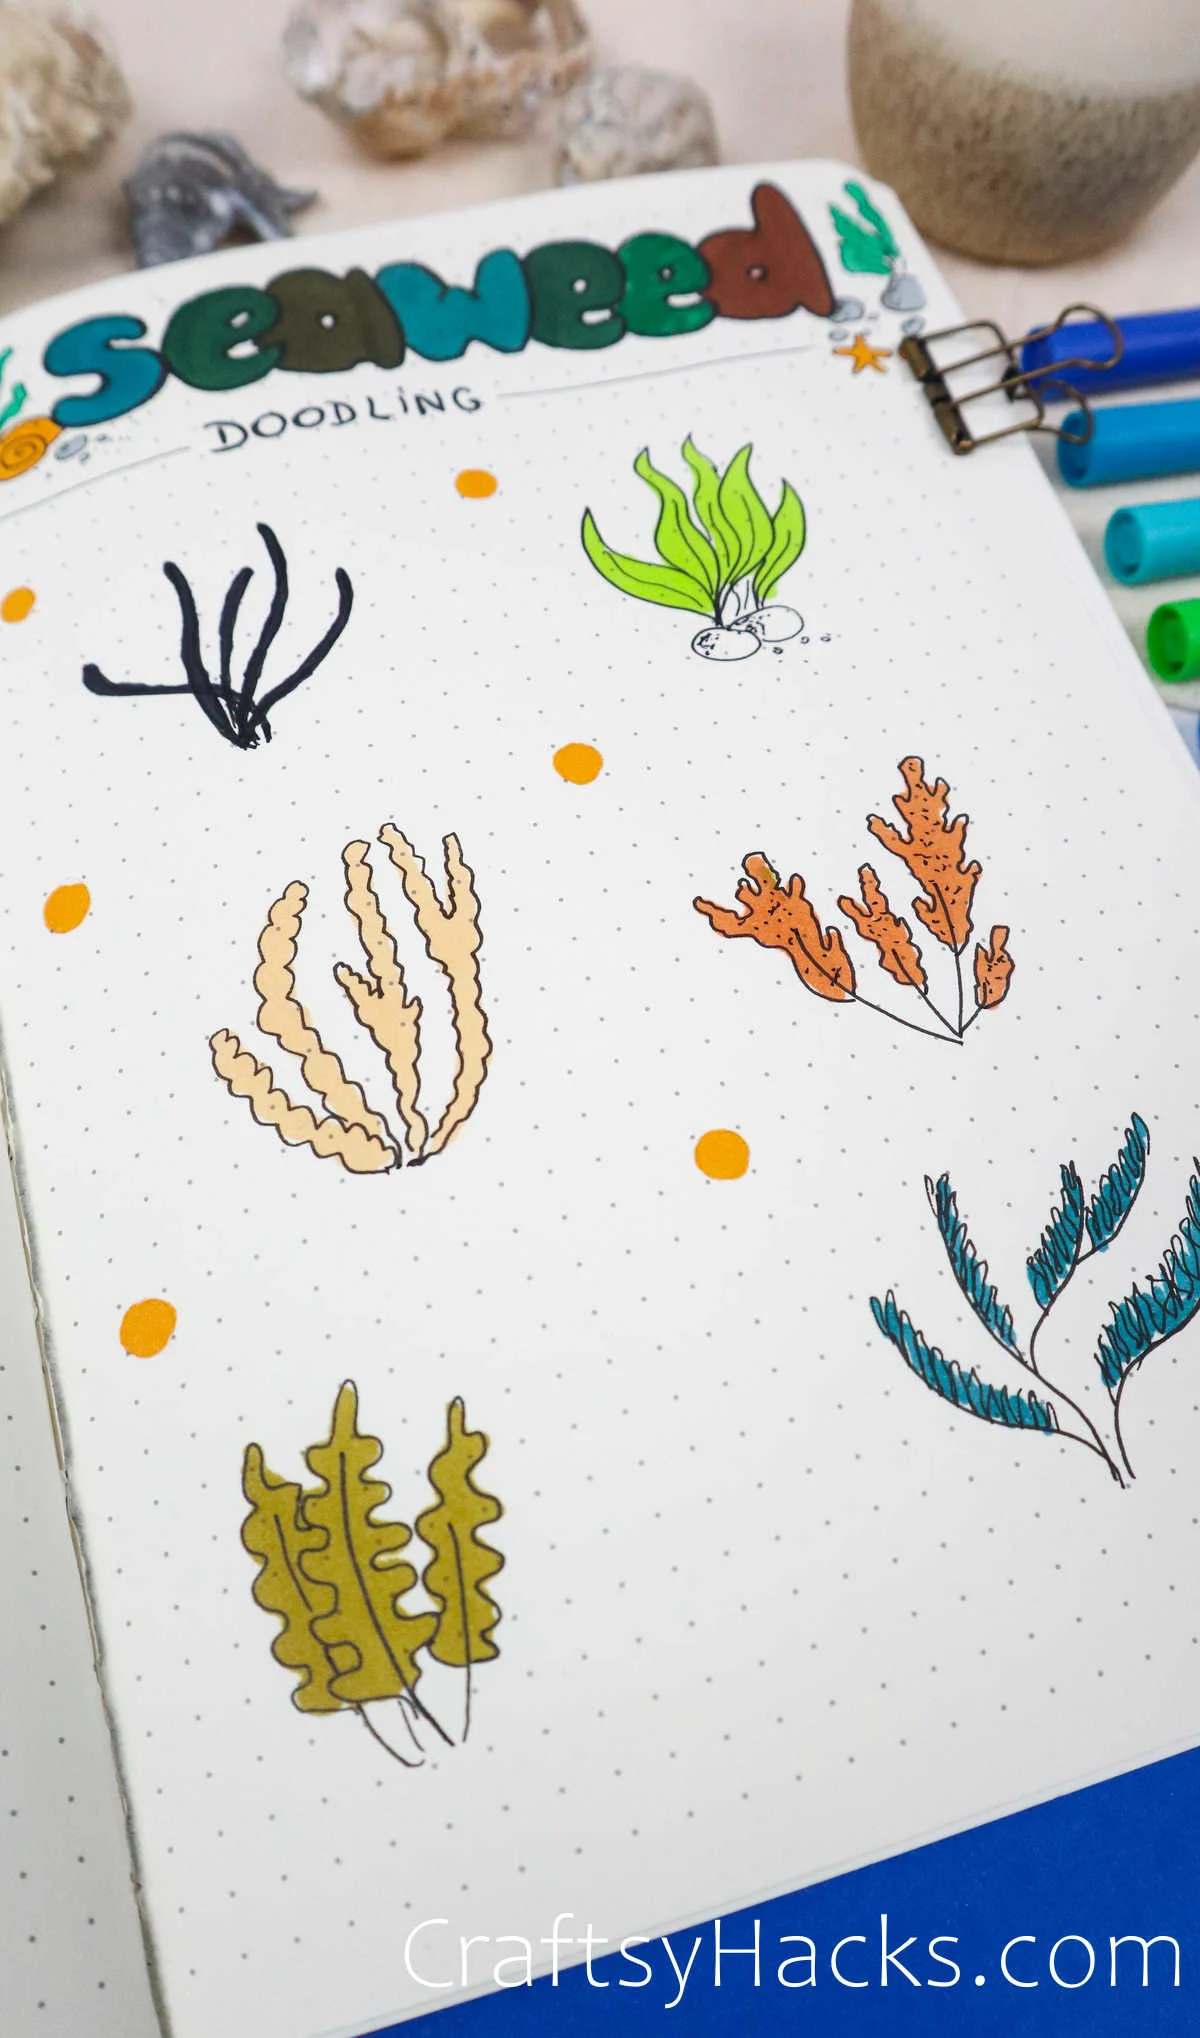 six types of seaweed drawings